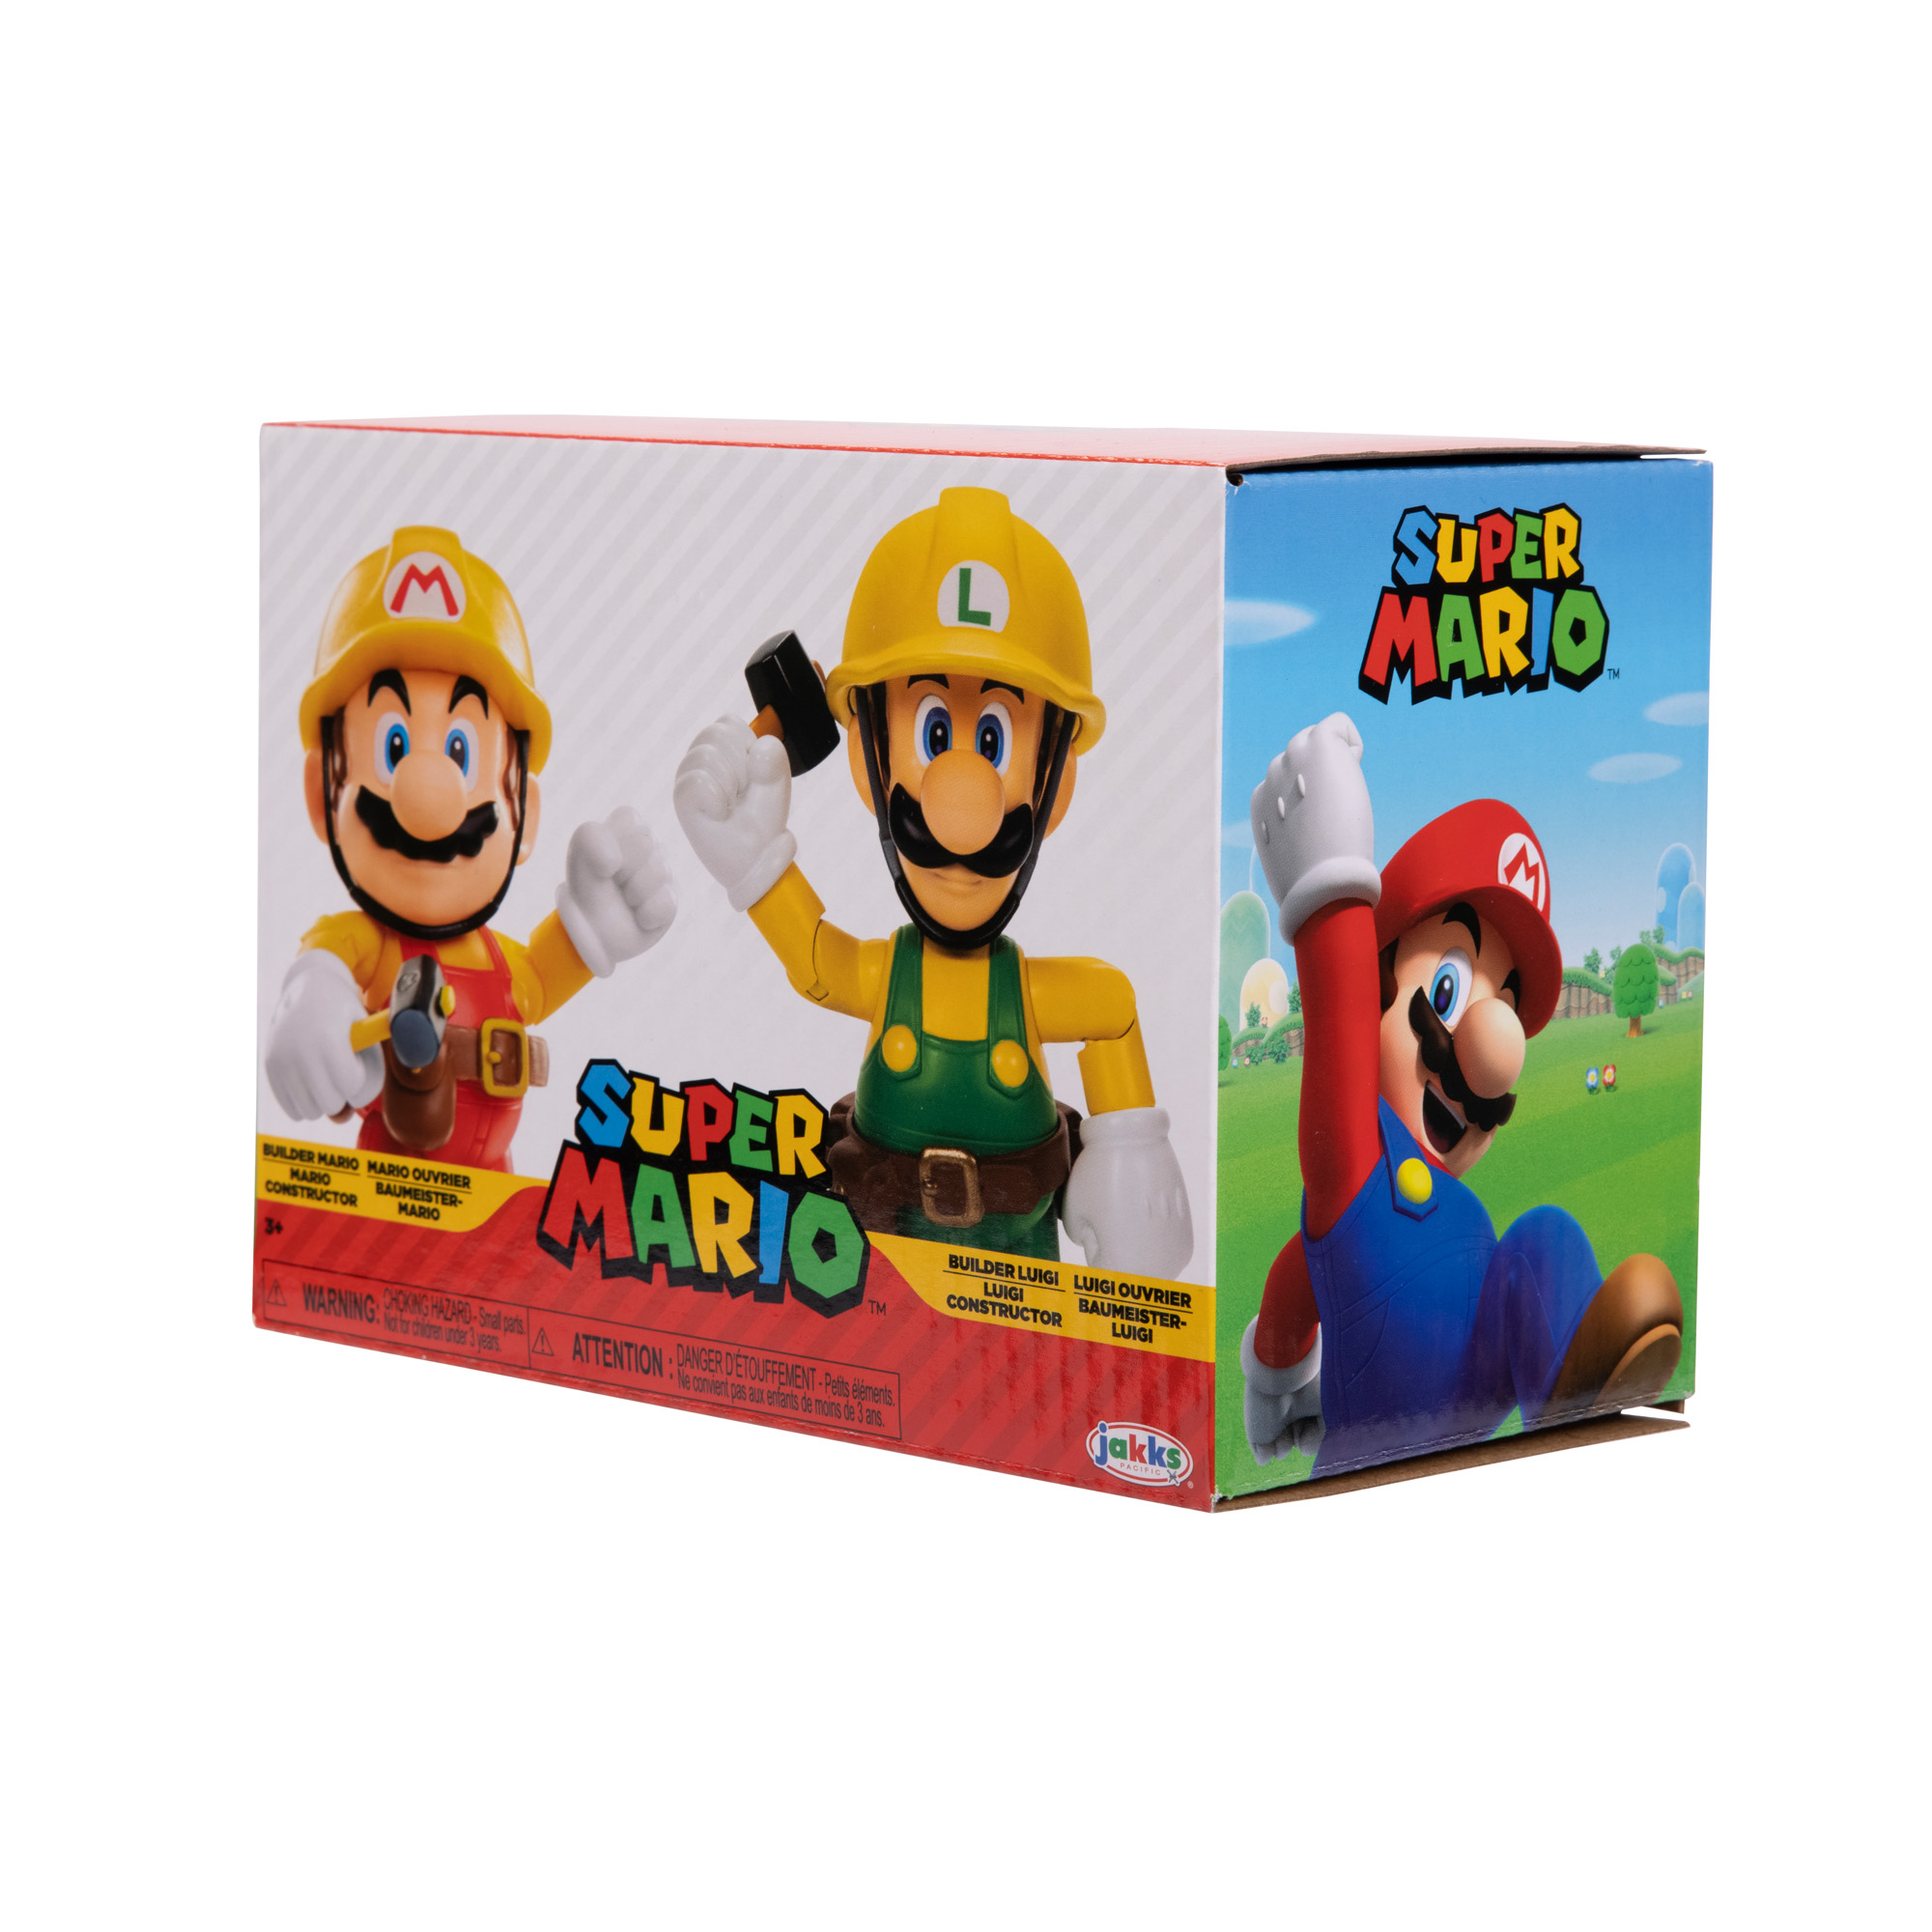 SUPER MARIO Nintendo Super Luigi Maker, Spielware & Mario Figuren 2er-Pack: Maker Mario 10cm